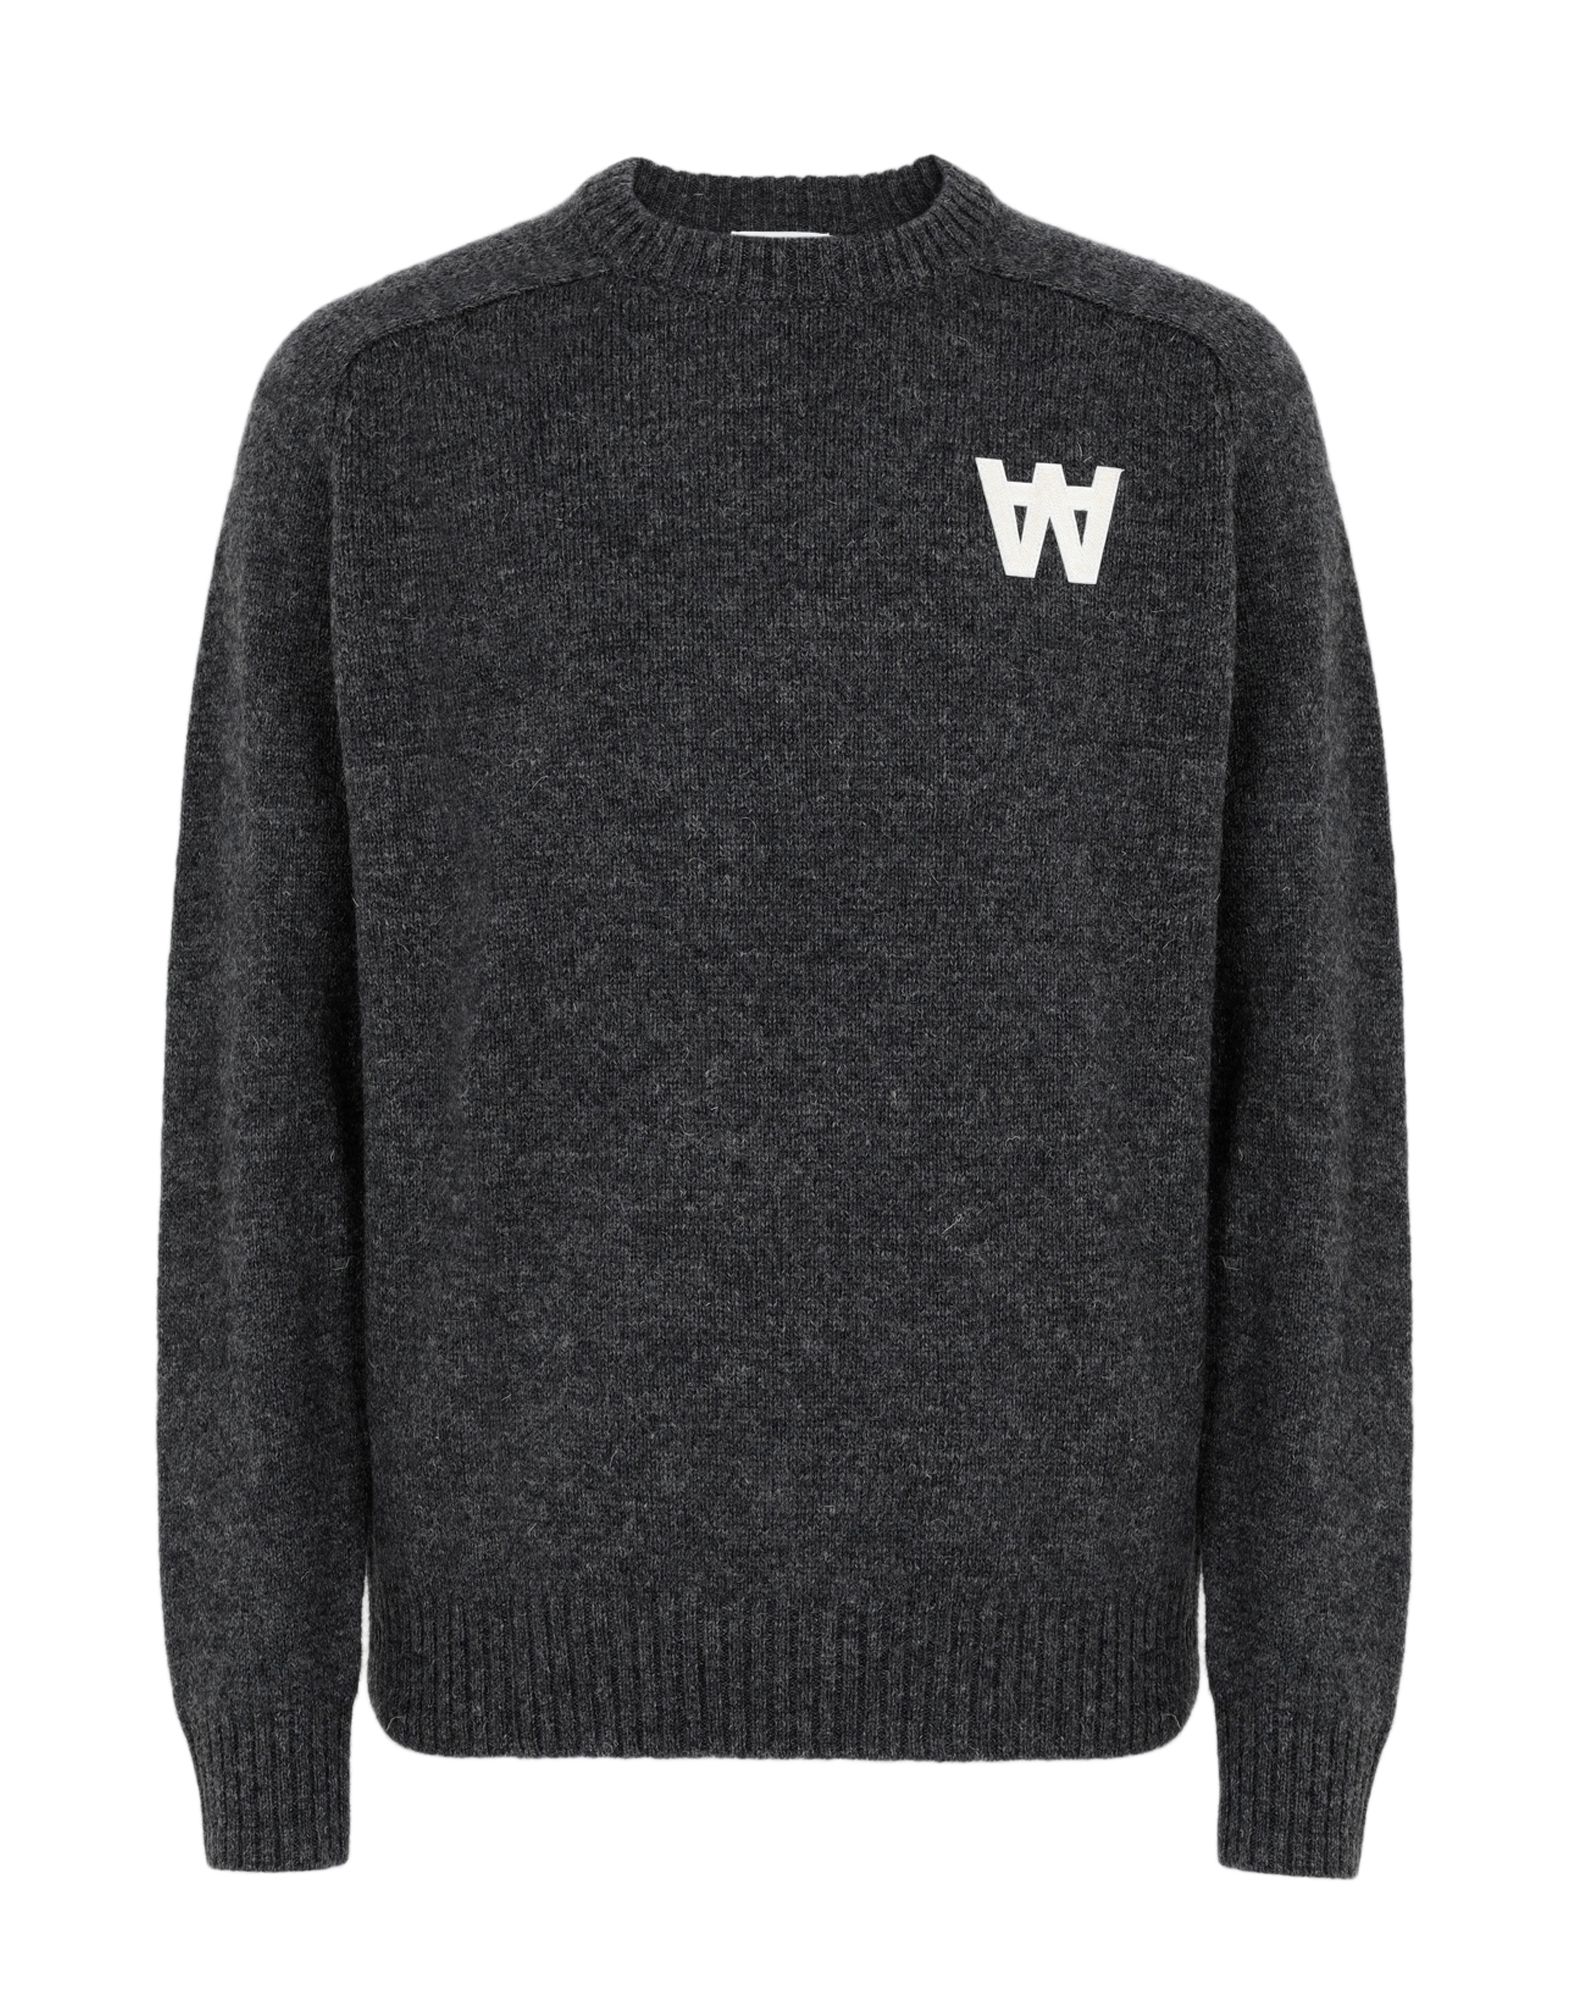 《送料無料》WOOD WOOD メンズ プルオーバー 鉛色 S ウール 100% Kevin sweater